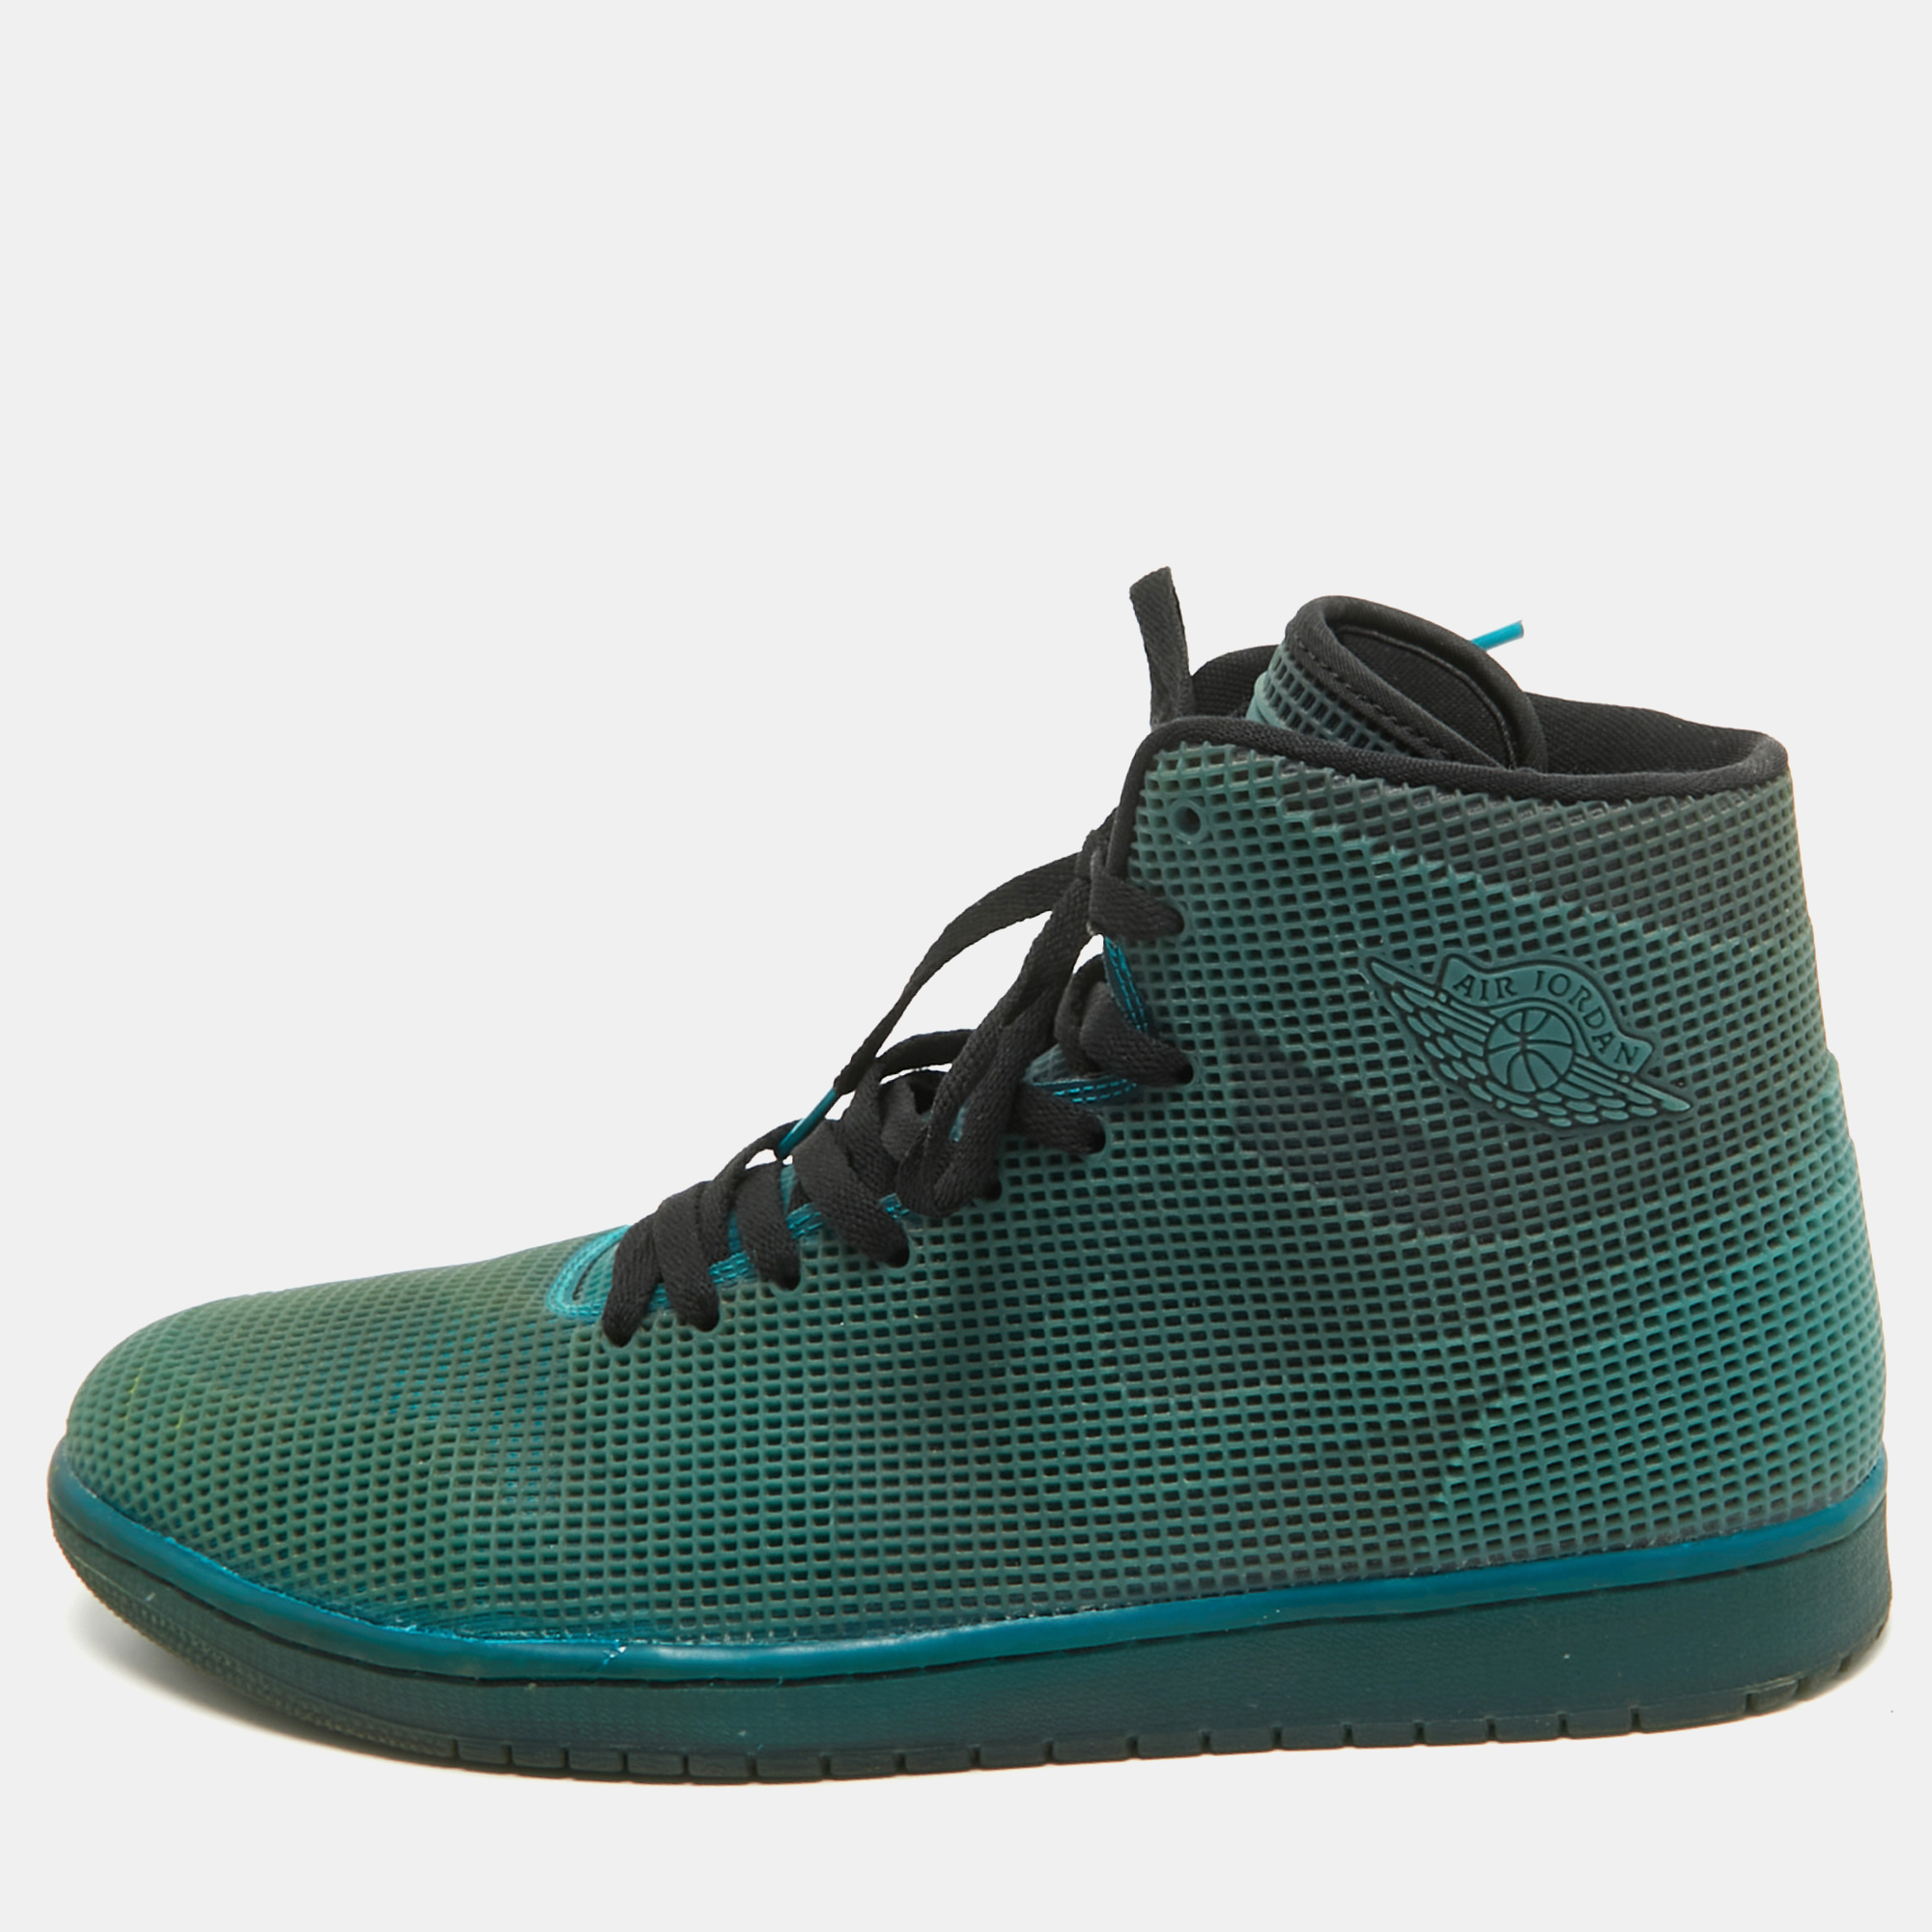 

Air Jordans Green Rubber Jordan 1 Retro 4Lab1 Tropical Teal Sneakers Size